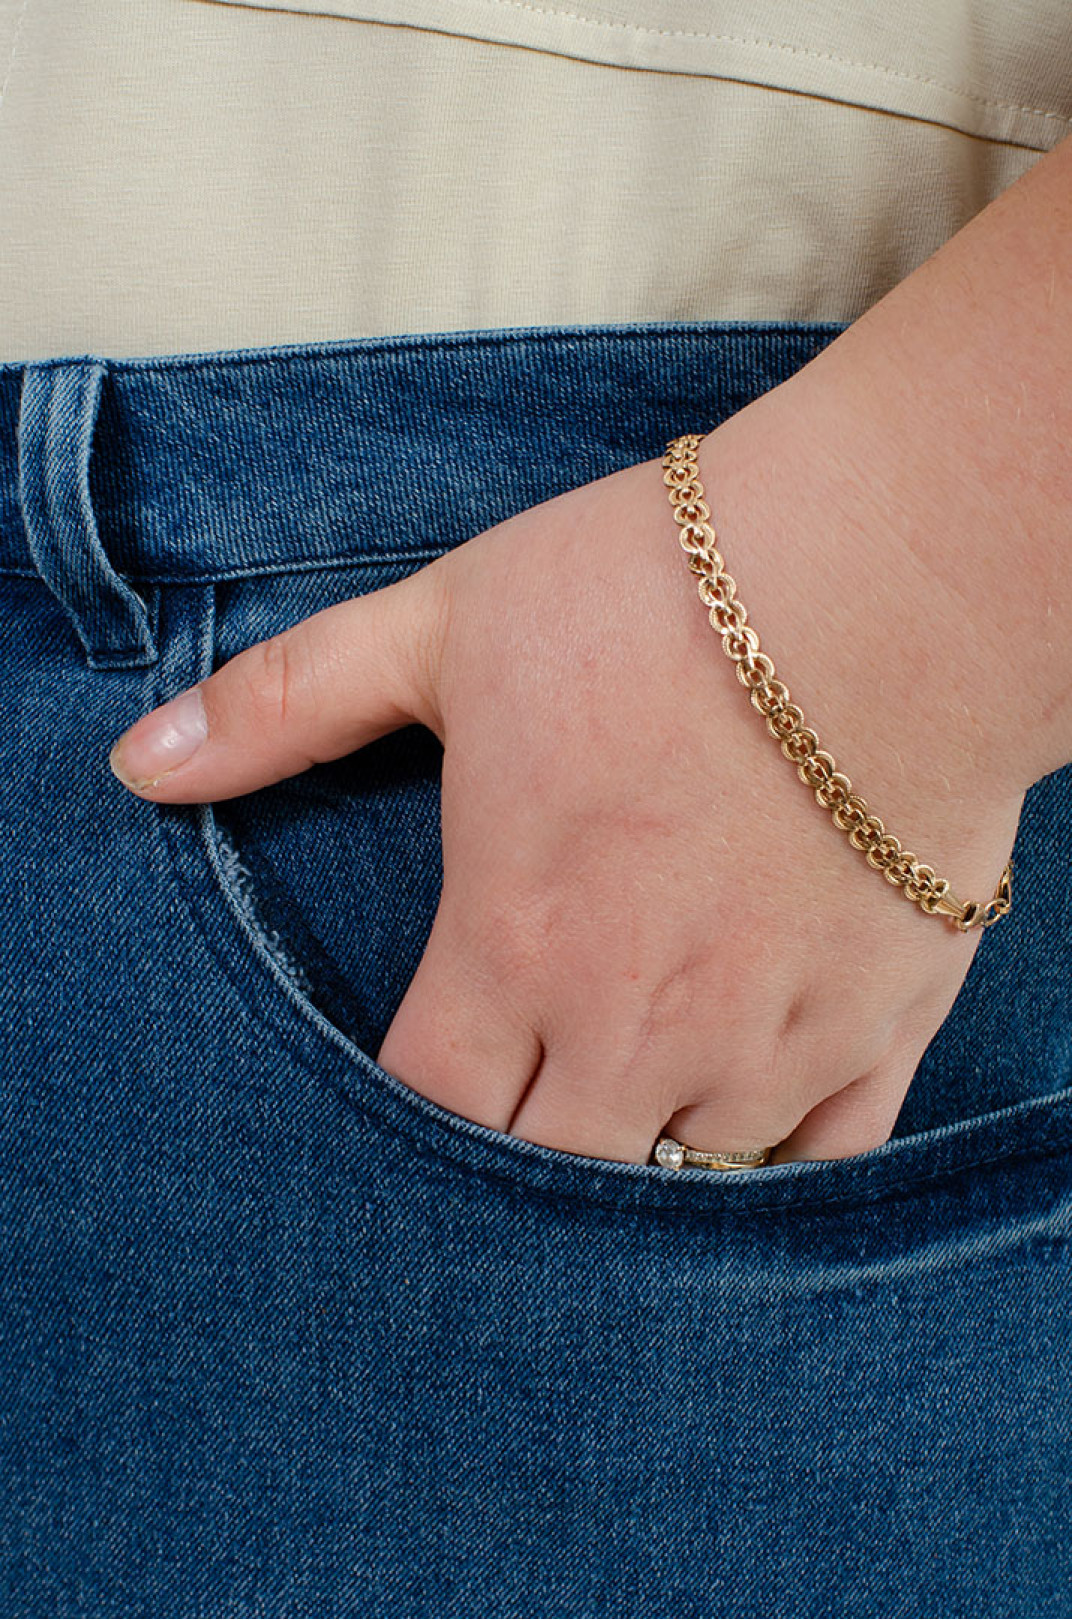 Шорты джинсовые больших размеров